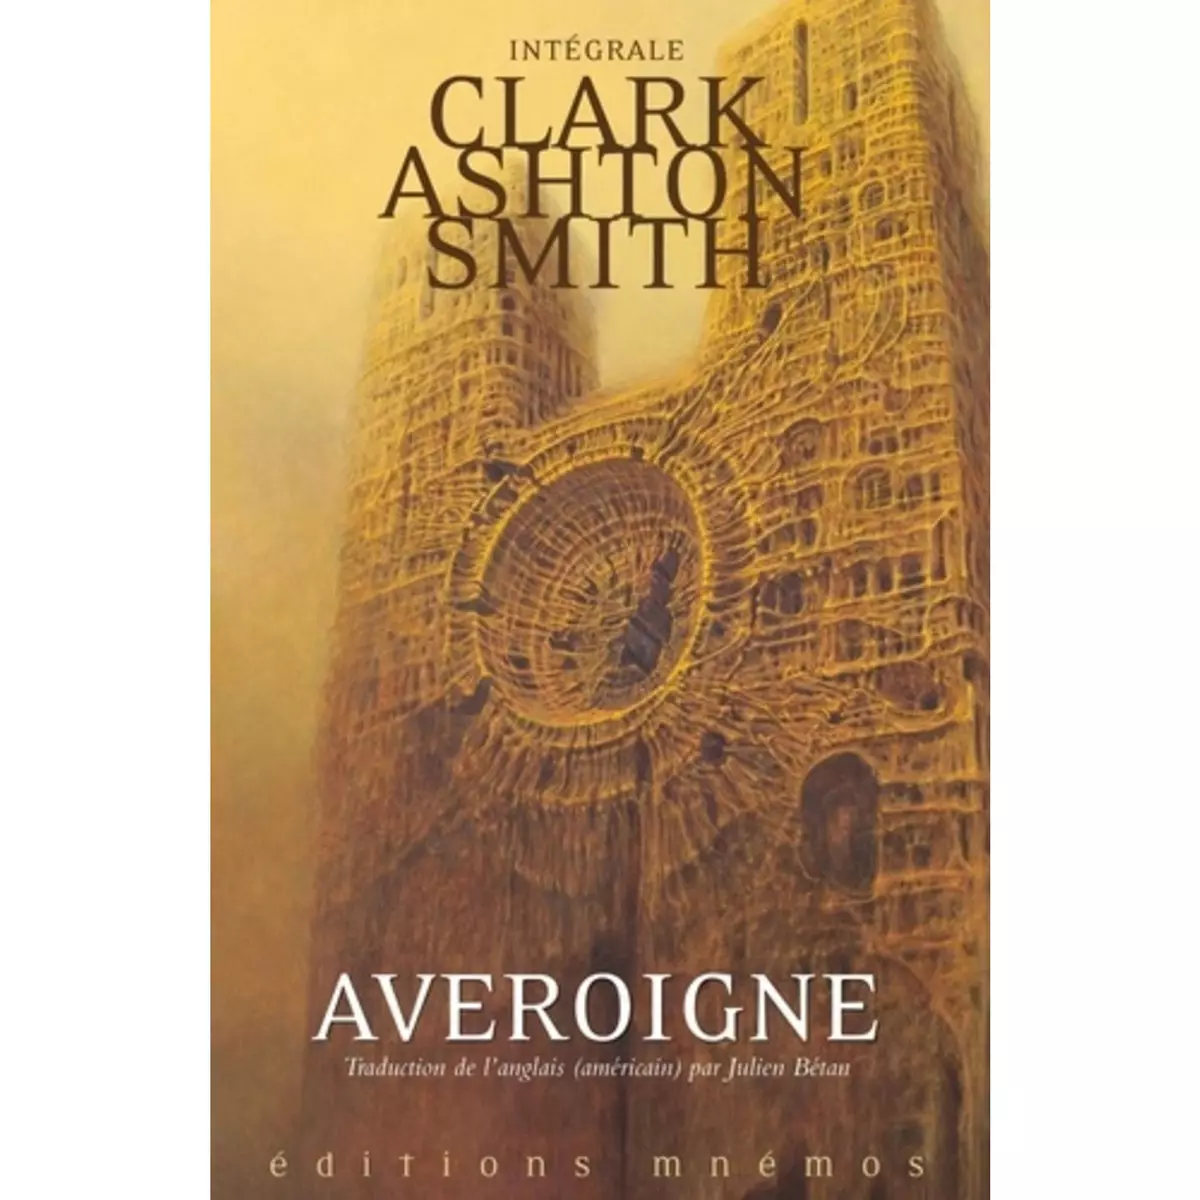  INTEGRALE CLARK ASHTON SMITH TOME 3 : AVEROIGNE & AUTRES MONDES, Smith Clark Ashton